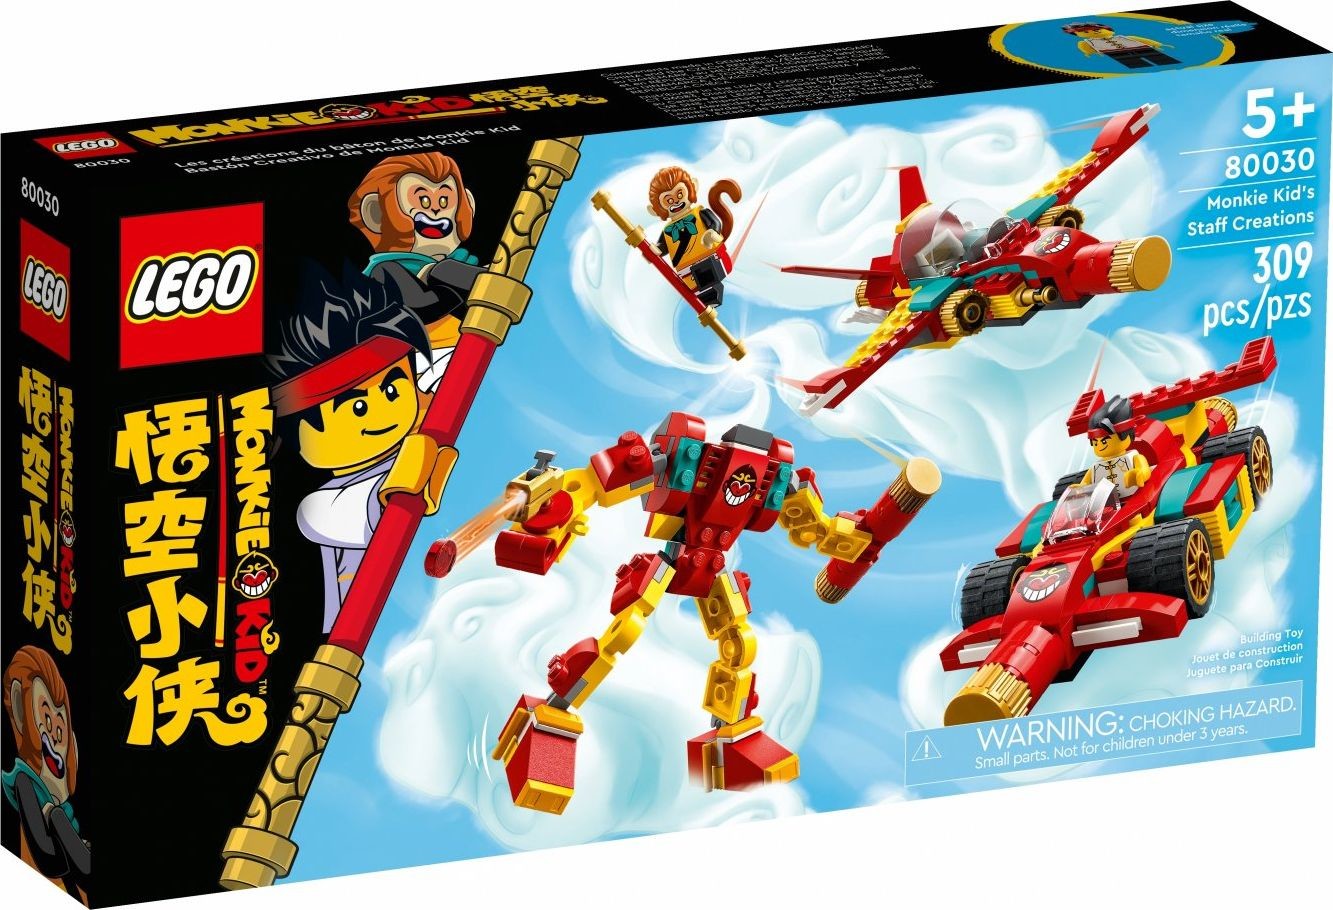 LEGO Monkie Kid Modele z kosturem Monkie Kida 80030 80030